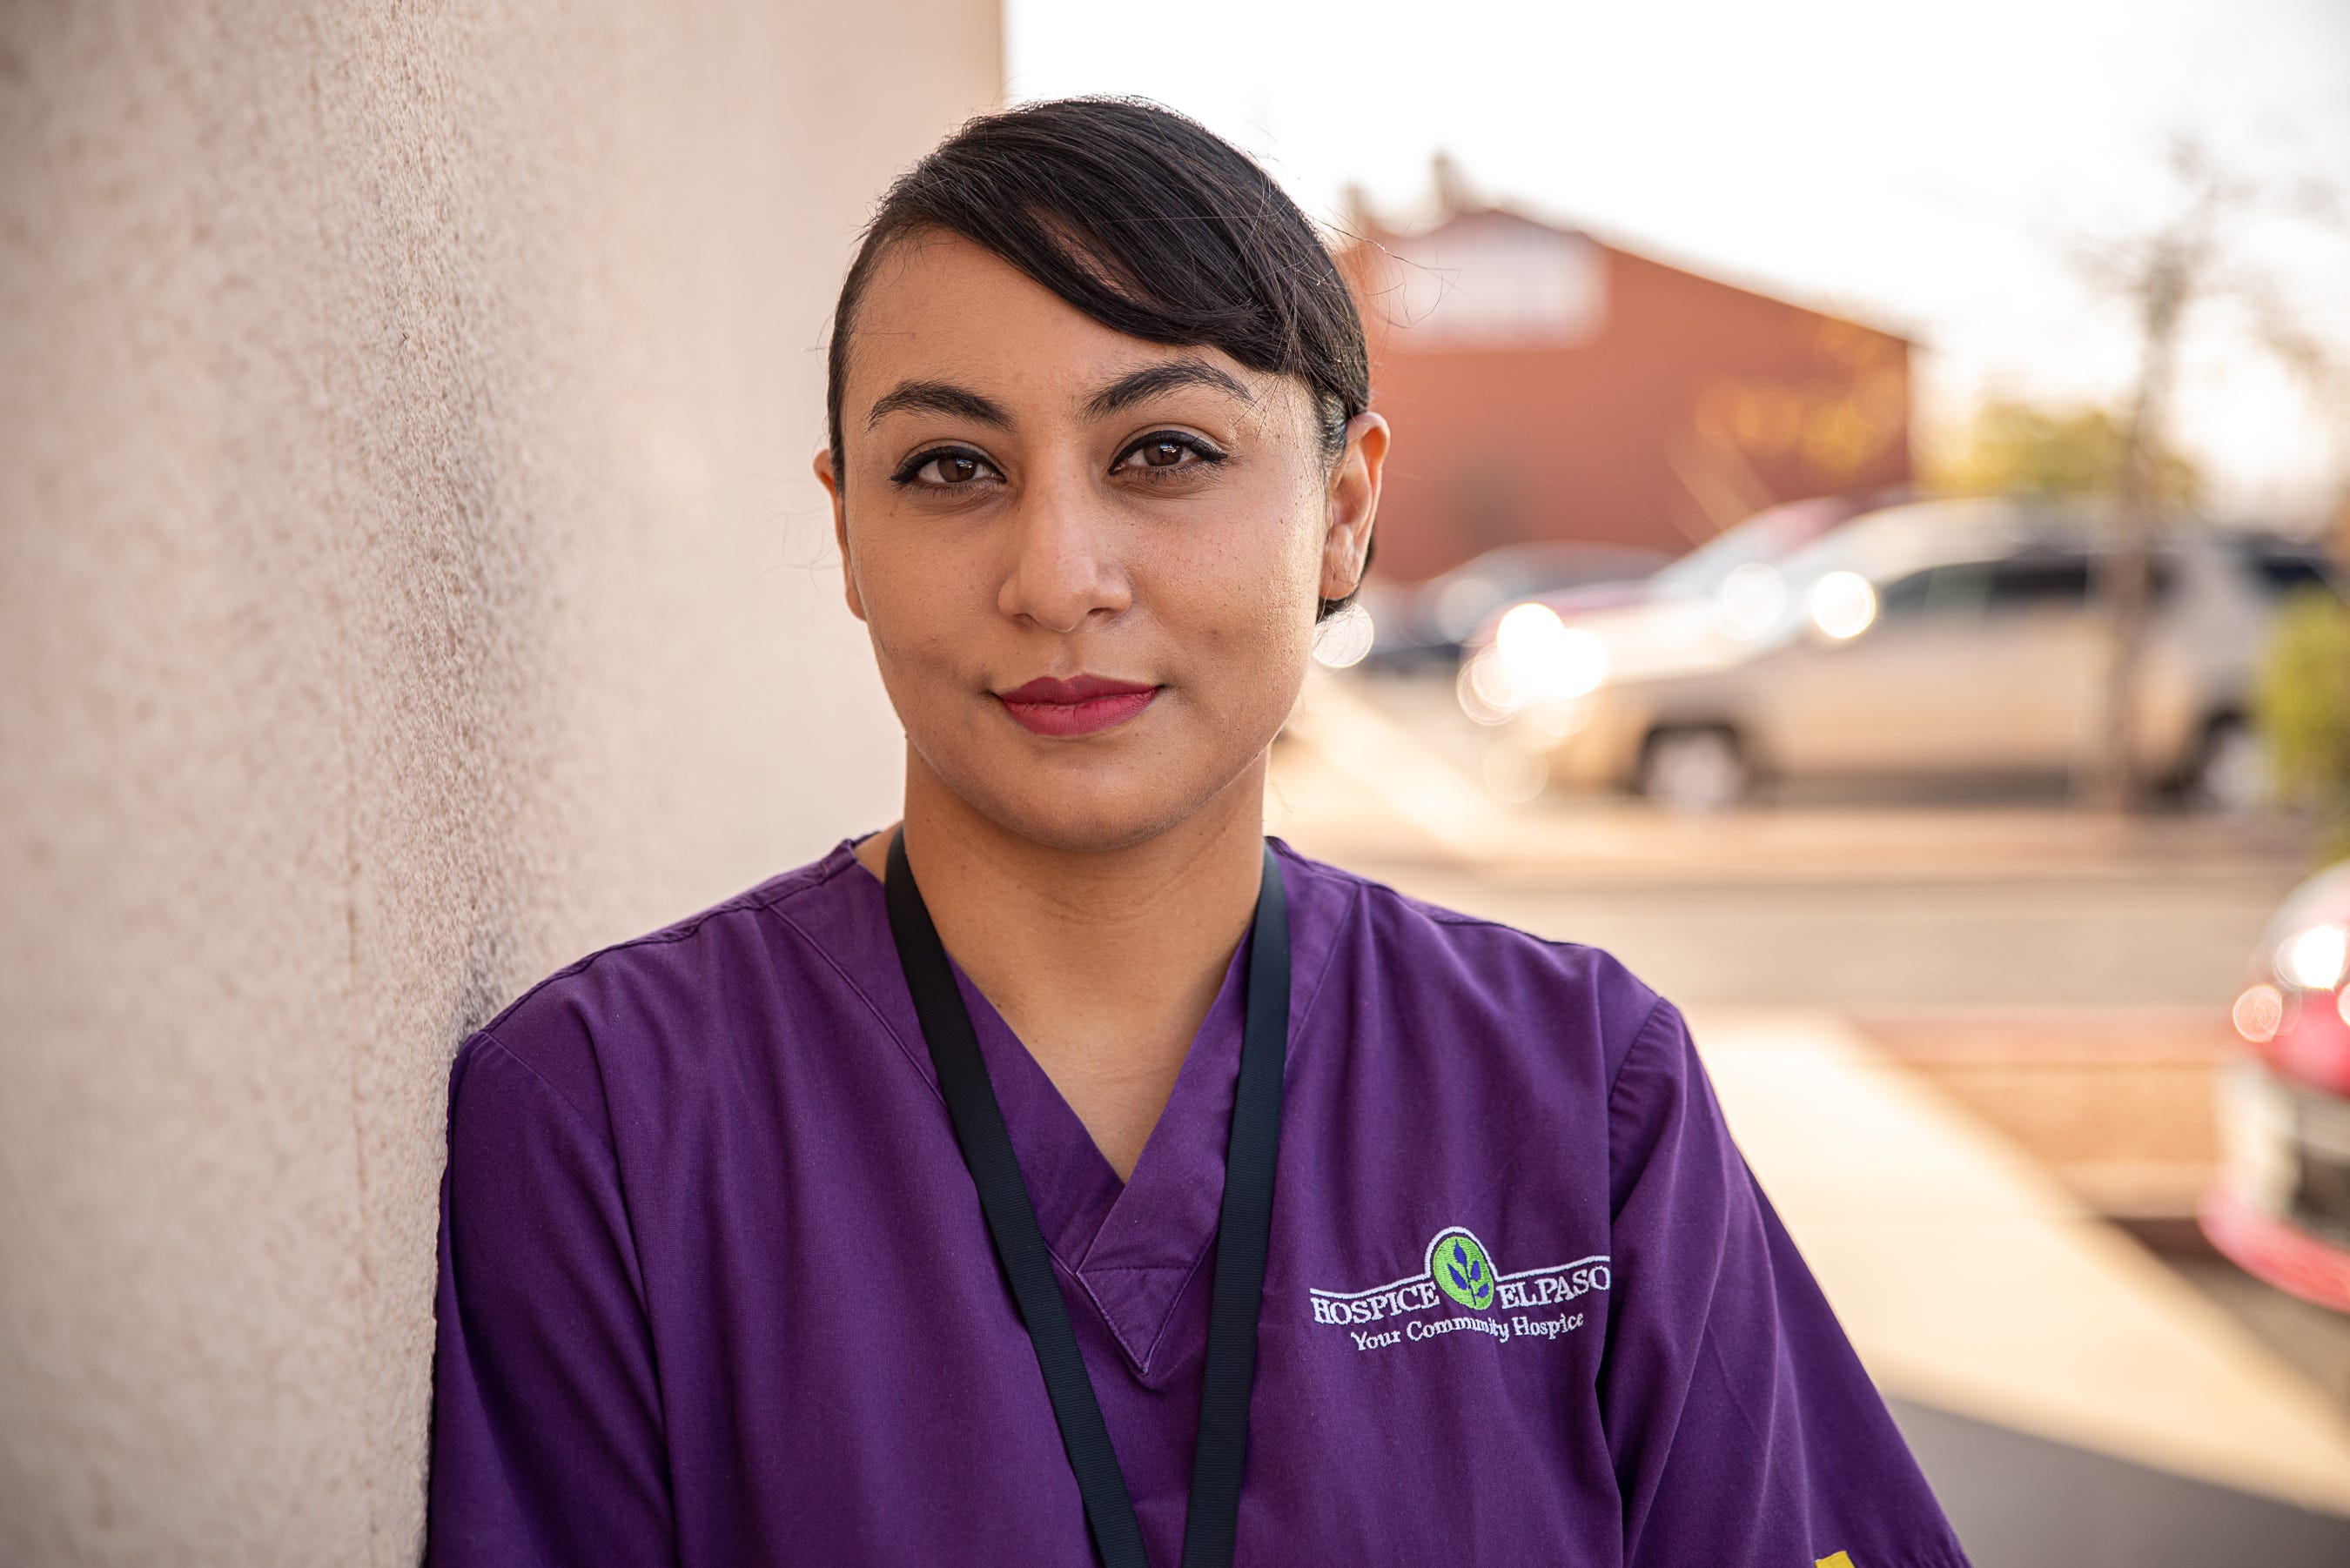 Yvette Perez is a social worker for Hospice El Paso. Nov. 18, 2020.